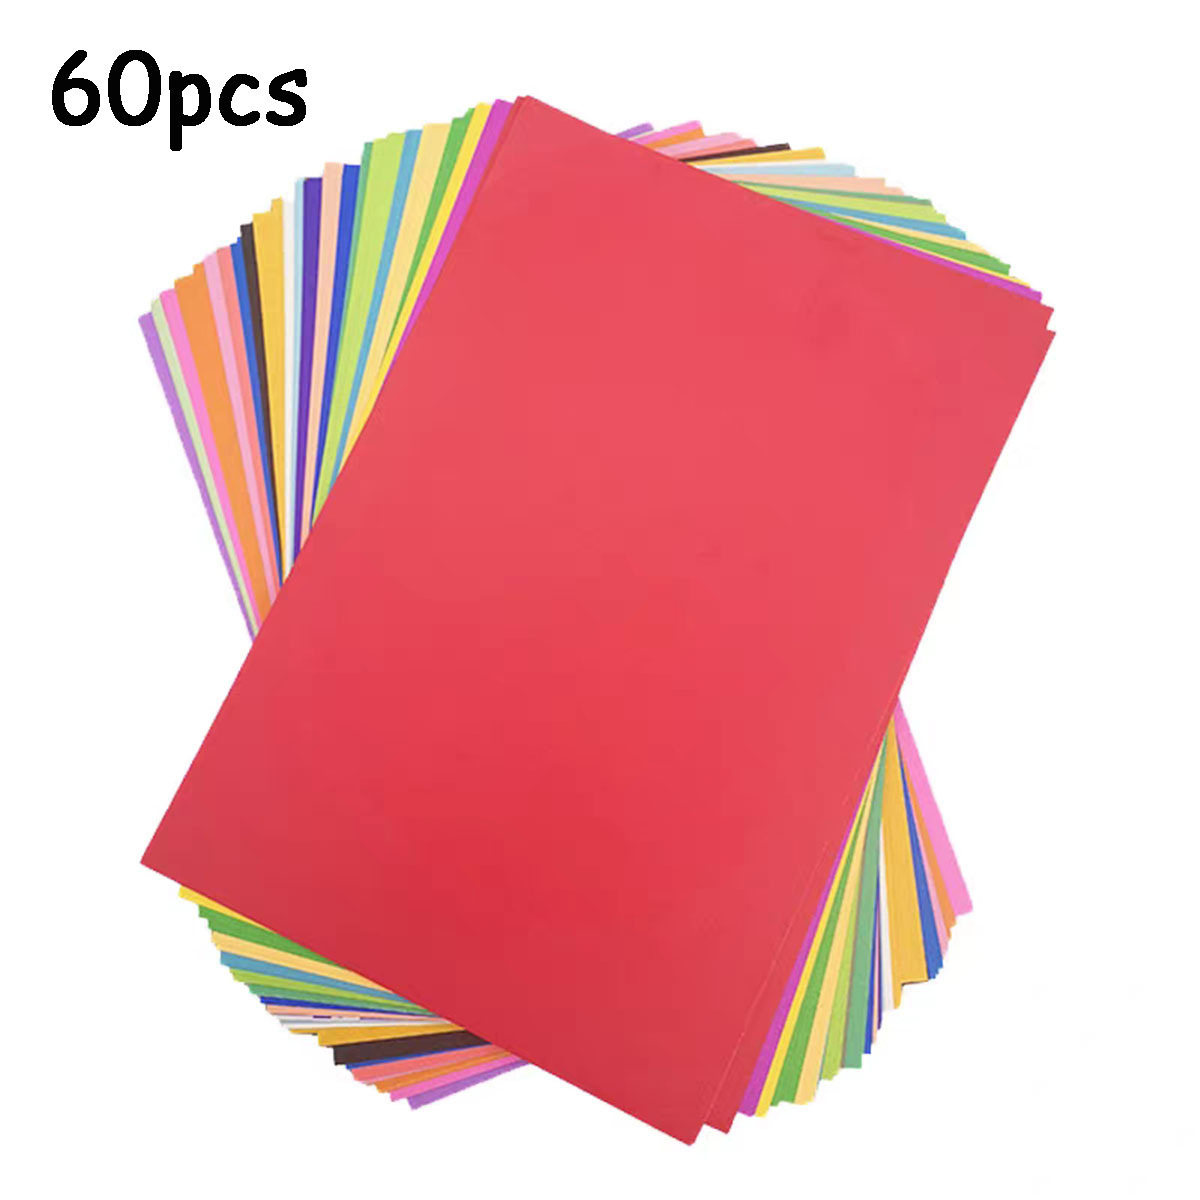 10 Colors Colored Paper A4 Printer Paper Copy Paper - Temu United